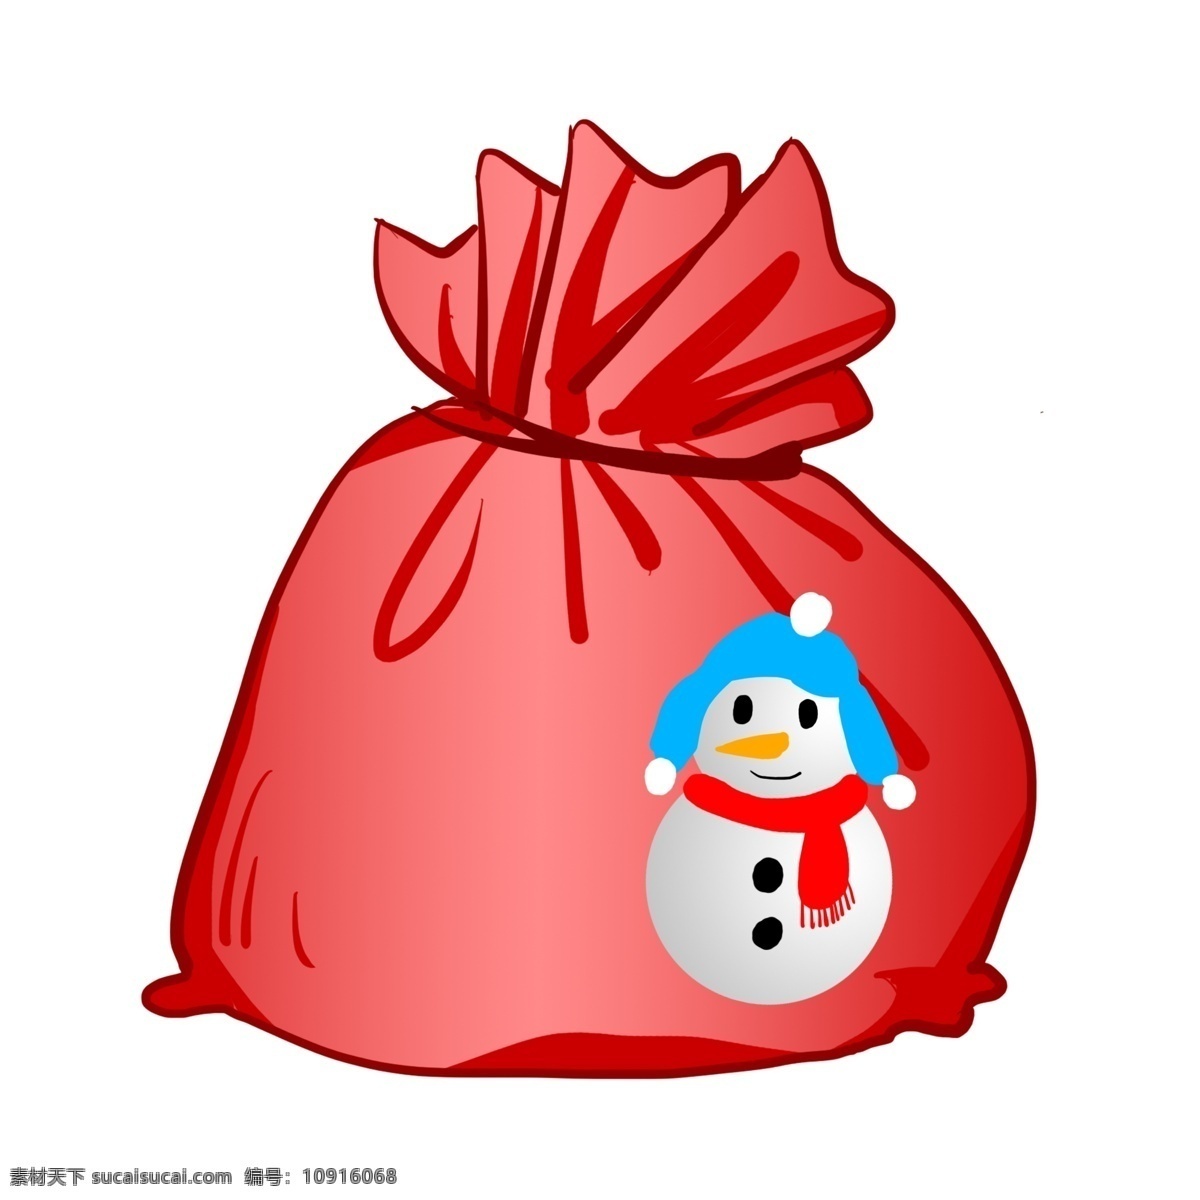 手绘 卡通 礼物 袋 插画 红色 雪人 红色围巾 蓝色帽子 卡通礼物袋 礼物袋插画 手绘礼物袋